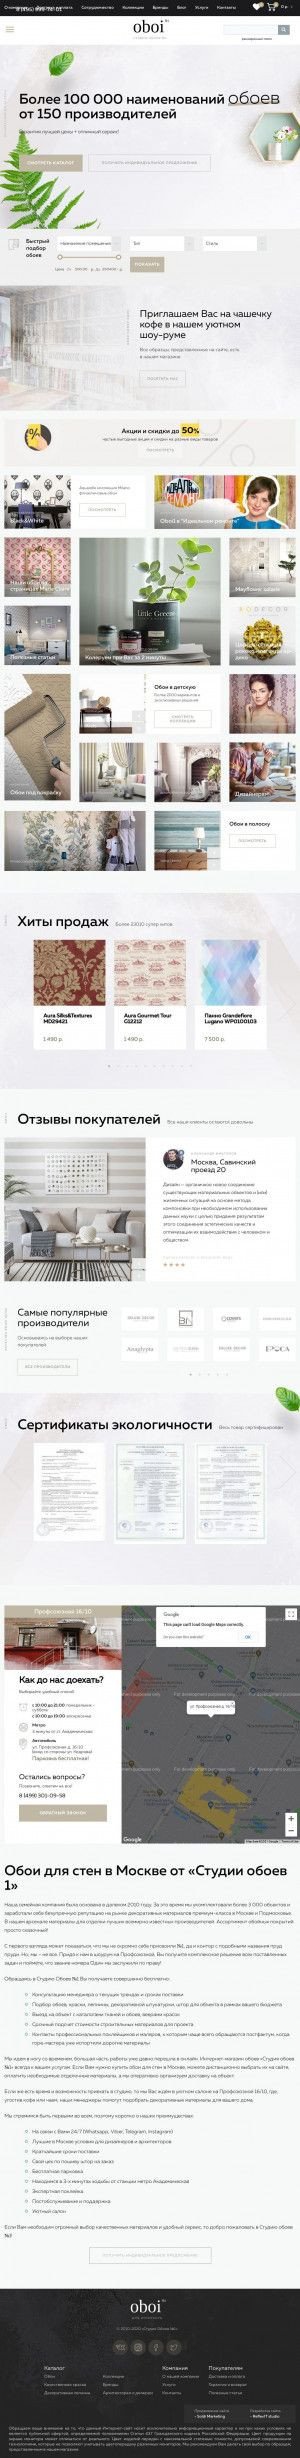 Предпросмотр для oboi1.ru — Студия обоев № 1